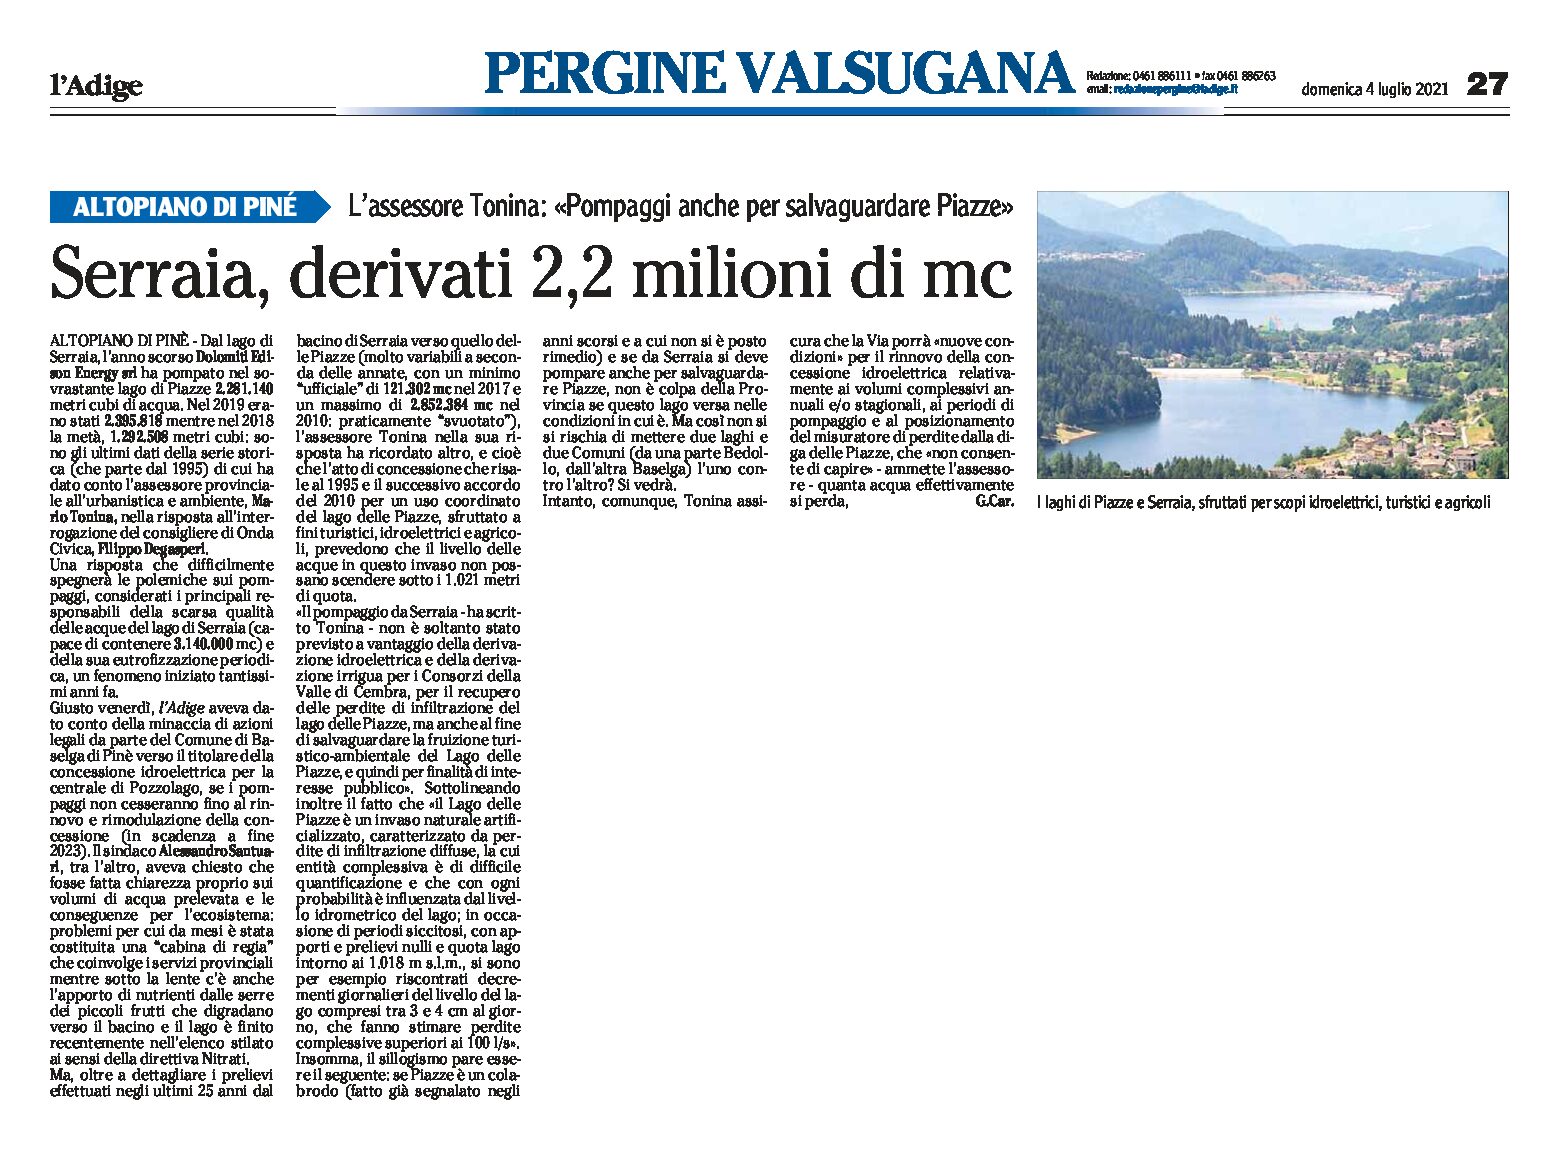 Altopiano di Pinè: pompaggi dal lago di Serraia anche per salvare il lago di Piazze